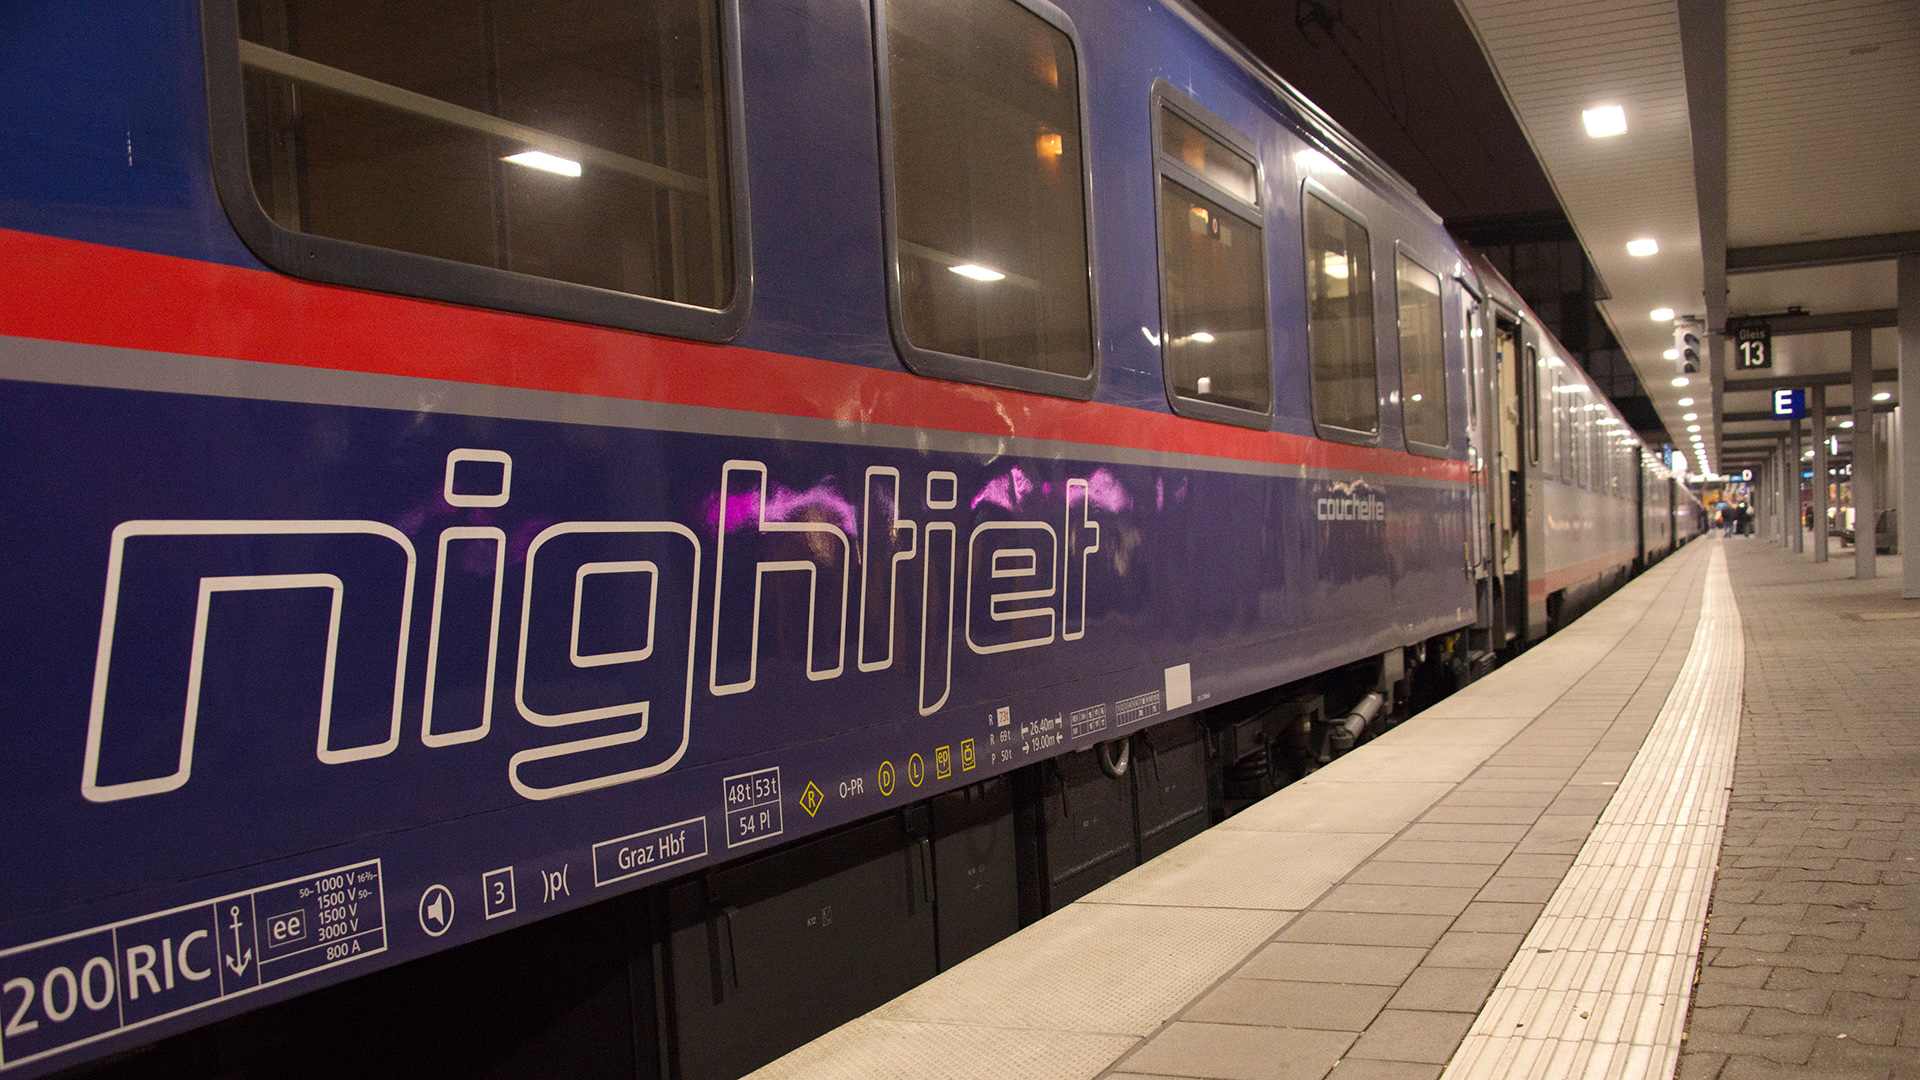  Ein Schlafwagen der Österreichischen Bundesbahnen mit dem Schriftzug "nightjet" steht im Bahnhof. | picture alliance/dpa